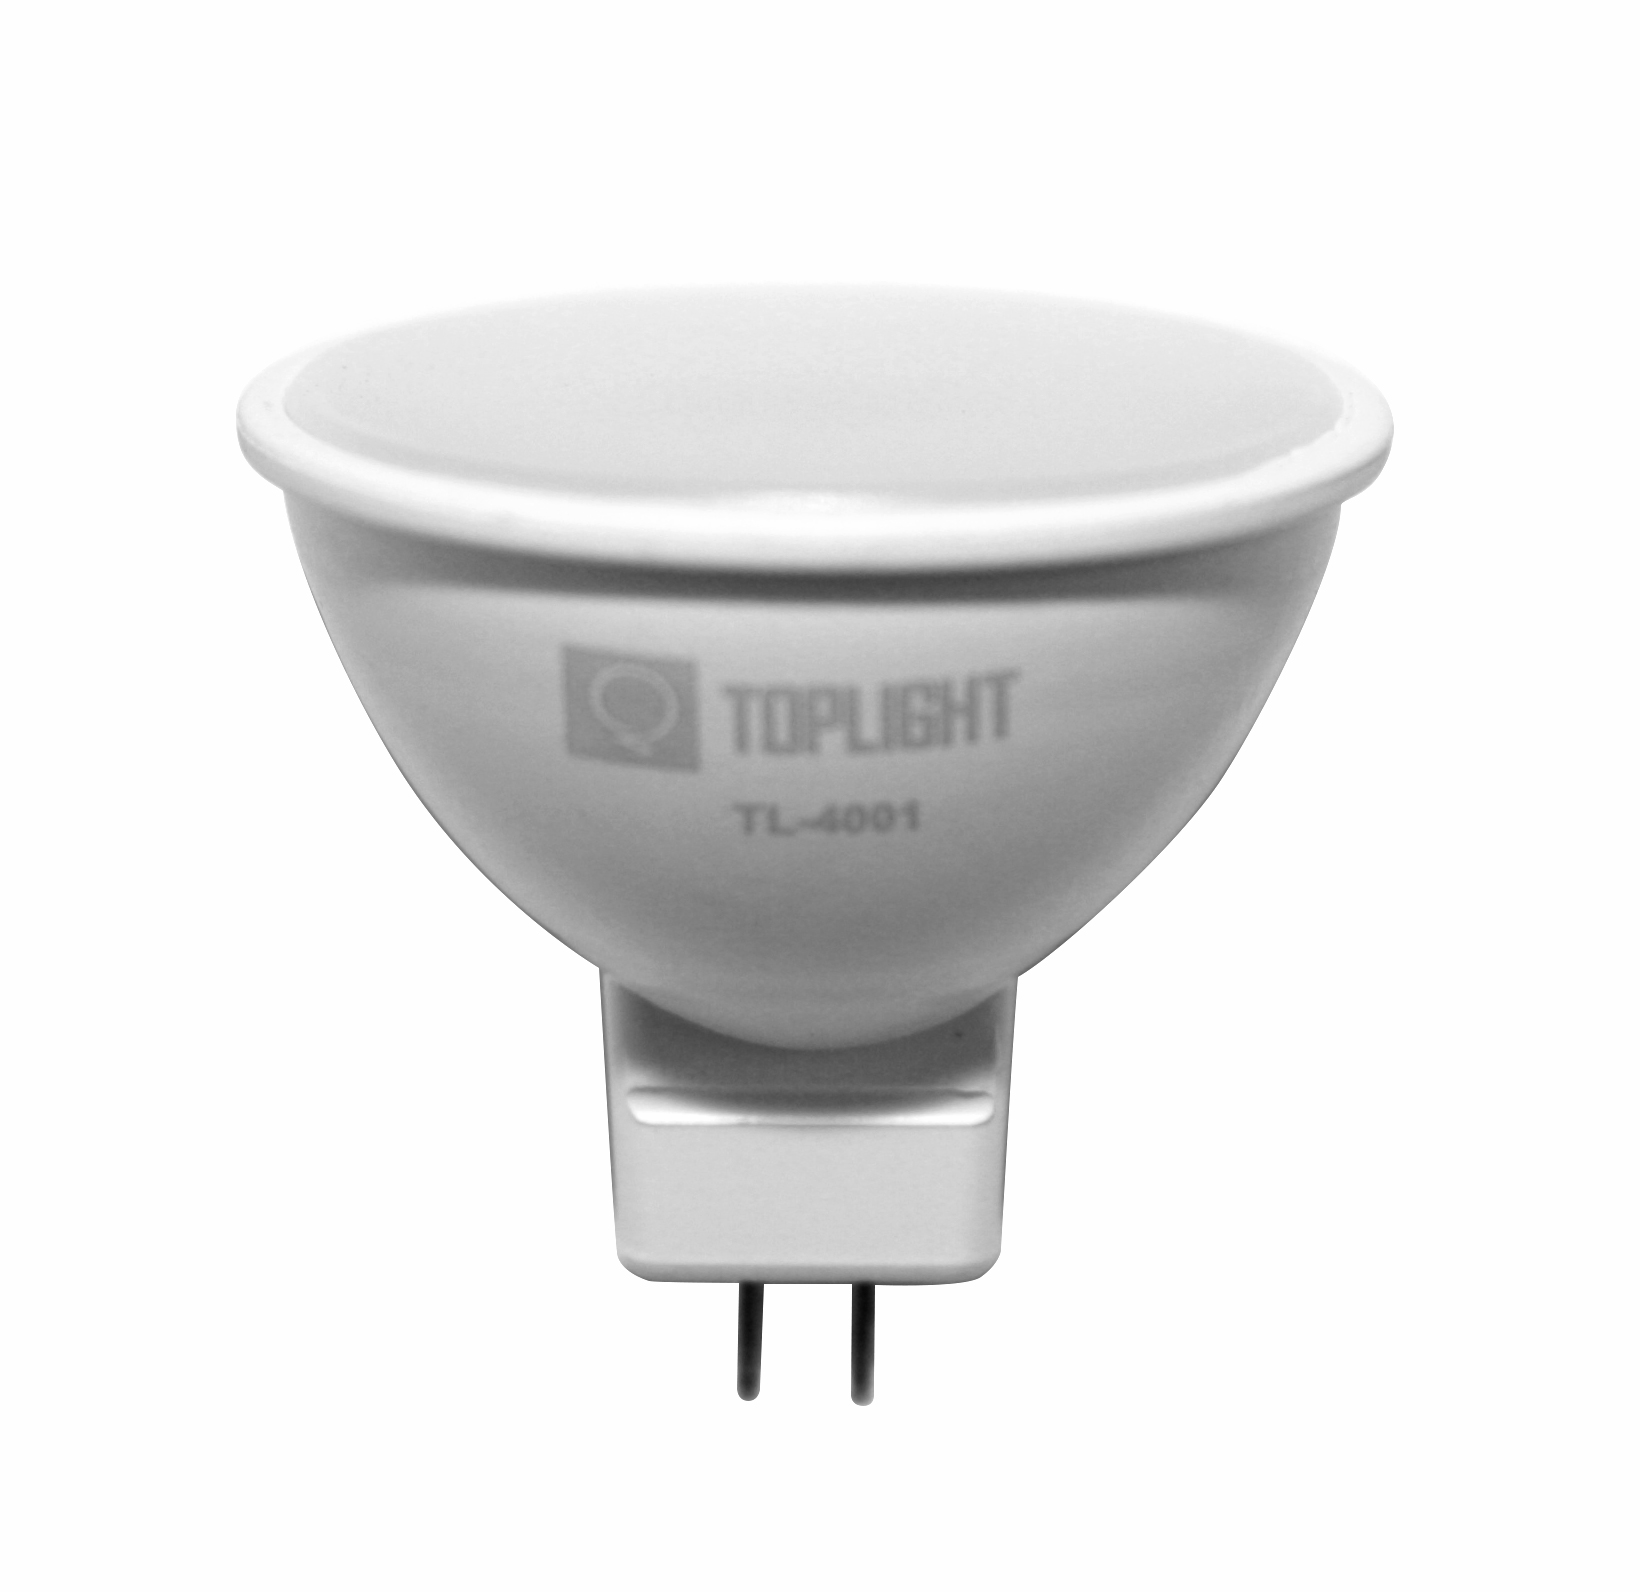 Купить лампочку gu 5.3. Лампочка gu 5.3 5w 450lm. Цоколь для лампочки gu5.3. Лампа gu5.3 12v светодиодная. Лампа светодиодная Top Light TL-3002, gu5.3, 6вт.